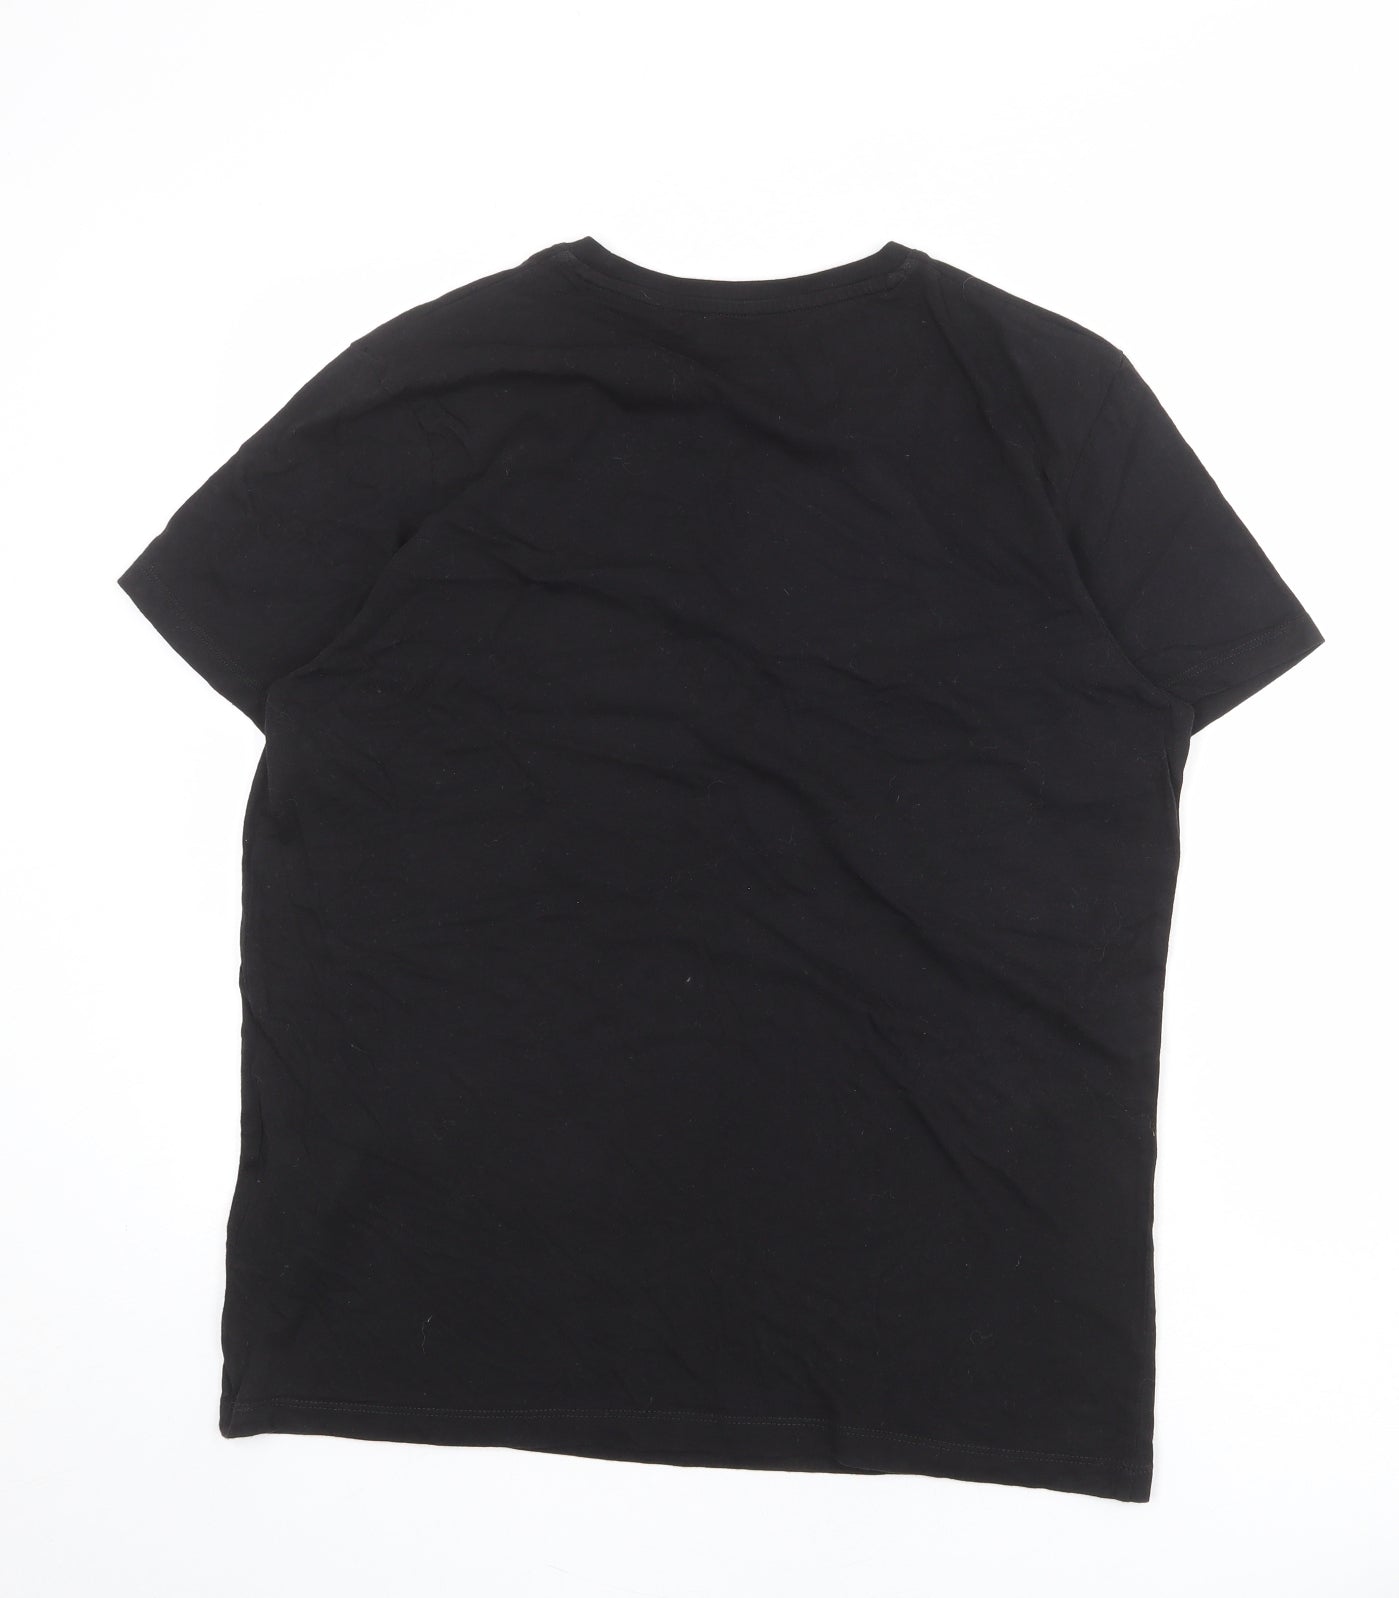 JACK & JONES Mens Black Cotton T-Shirt Size L Round Neck